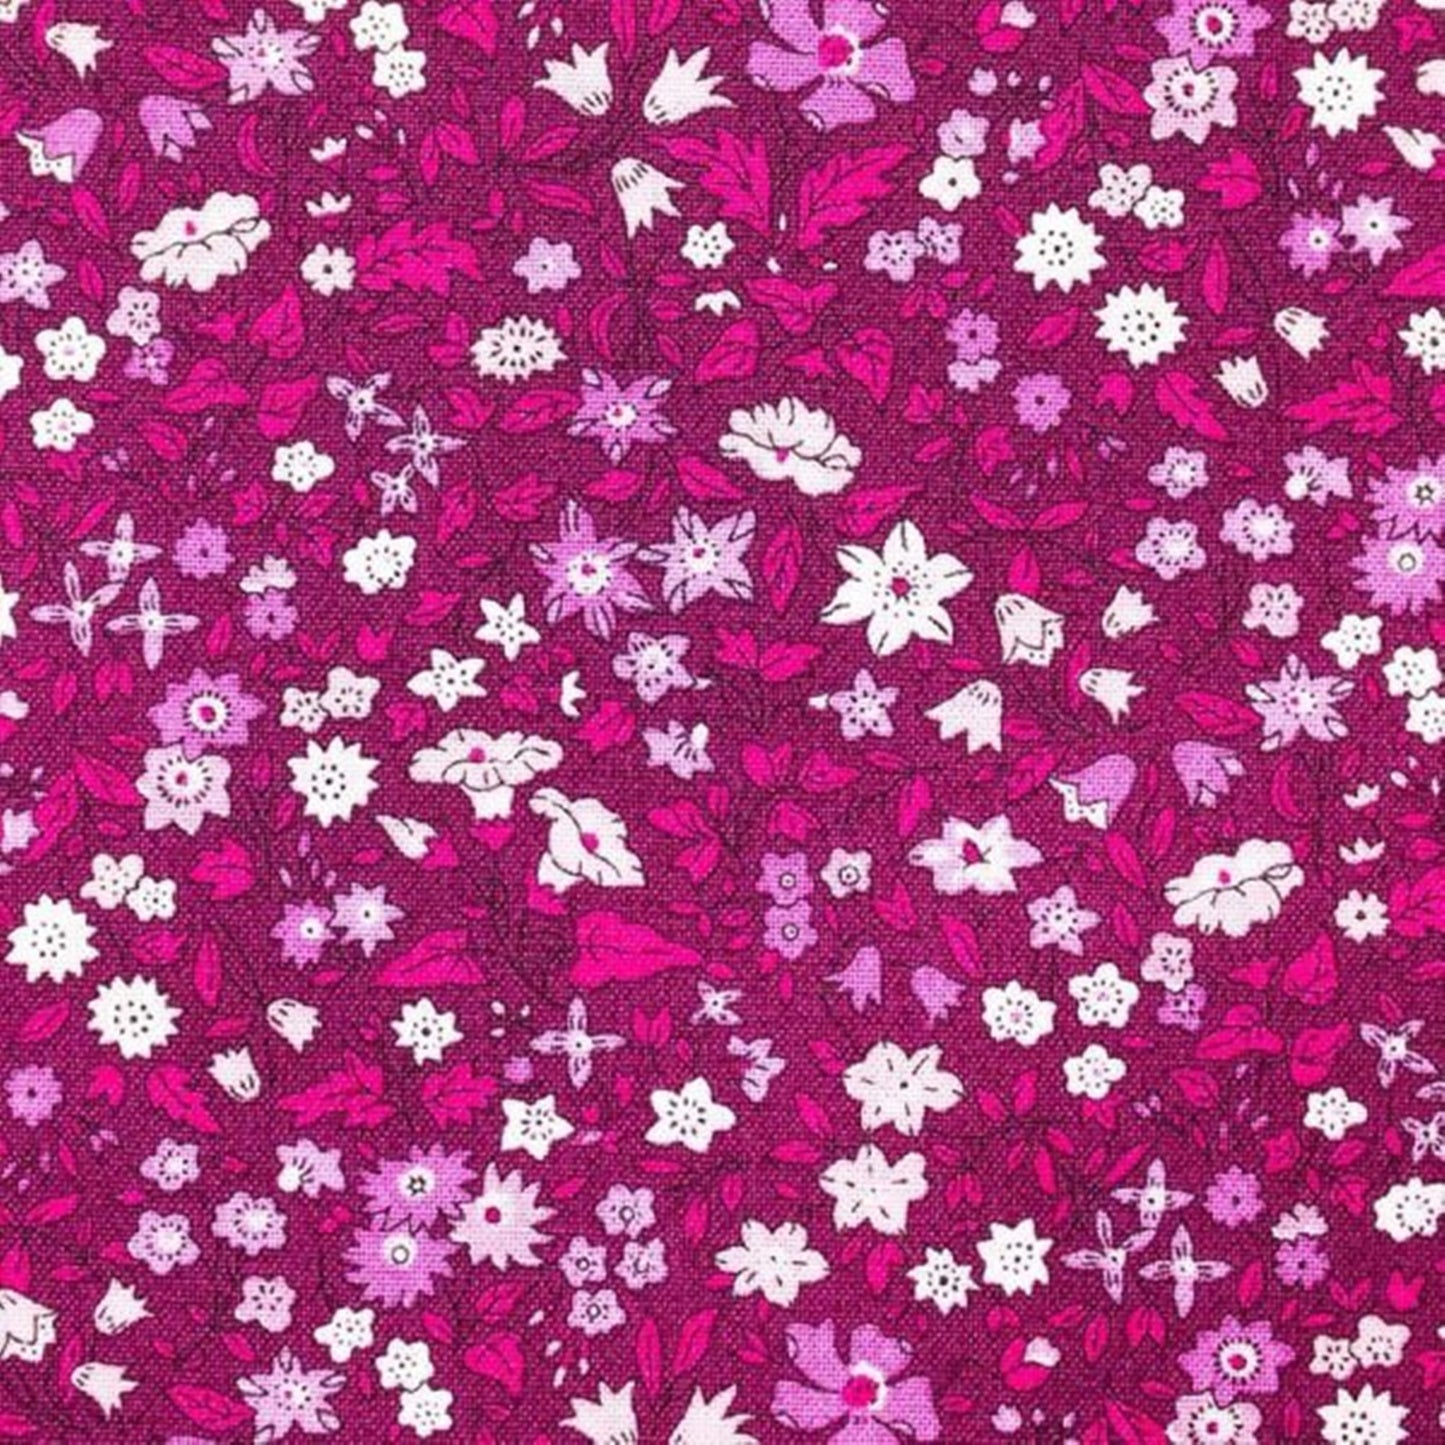 Liberty Flower Show Botanical Jewel bundle B - 5 Fat Quarters cotton quilt fabric